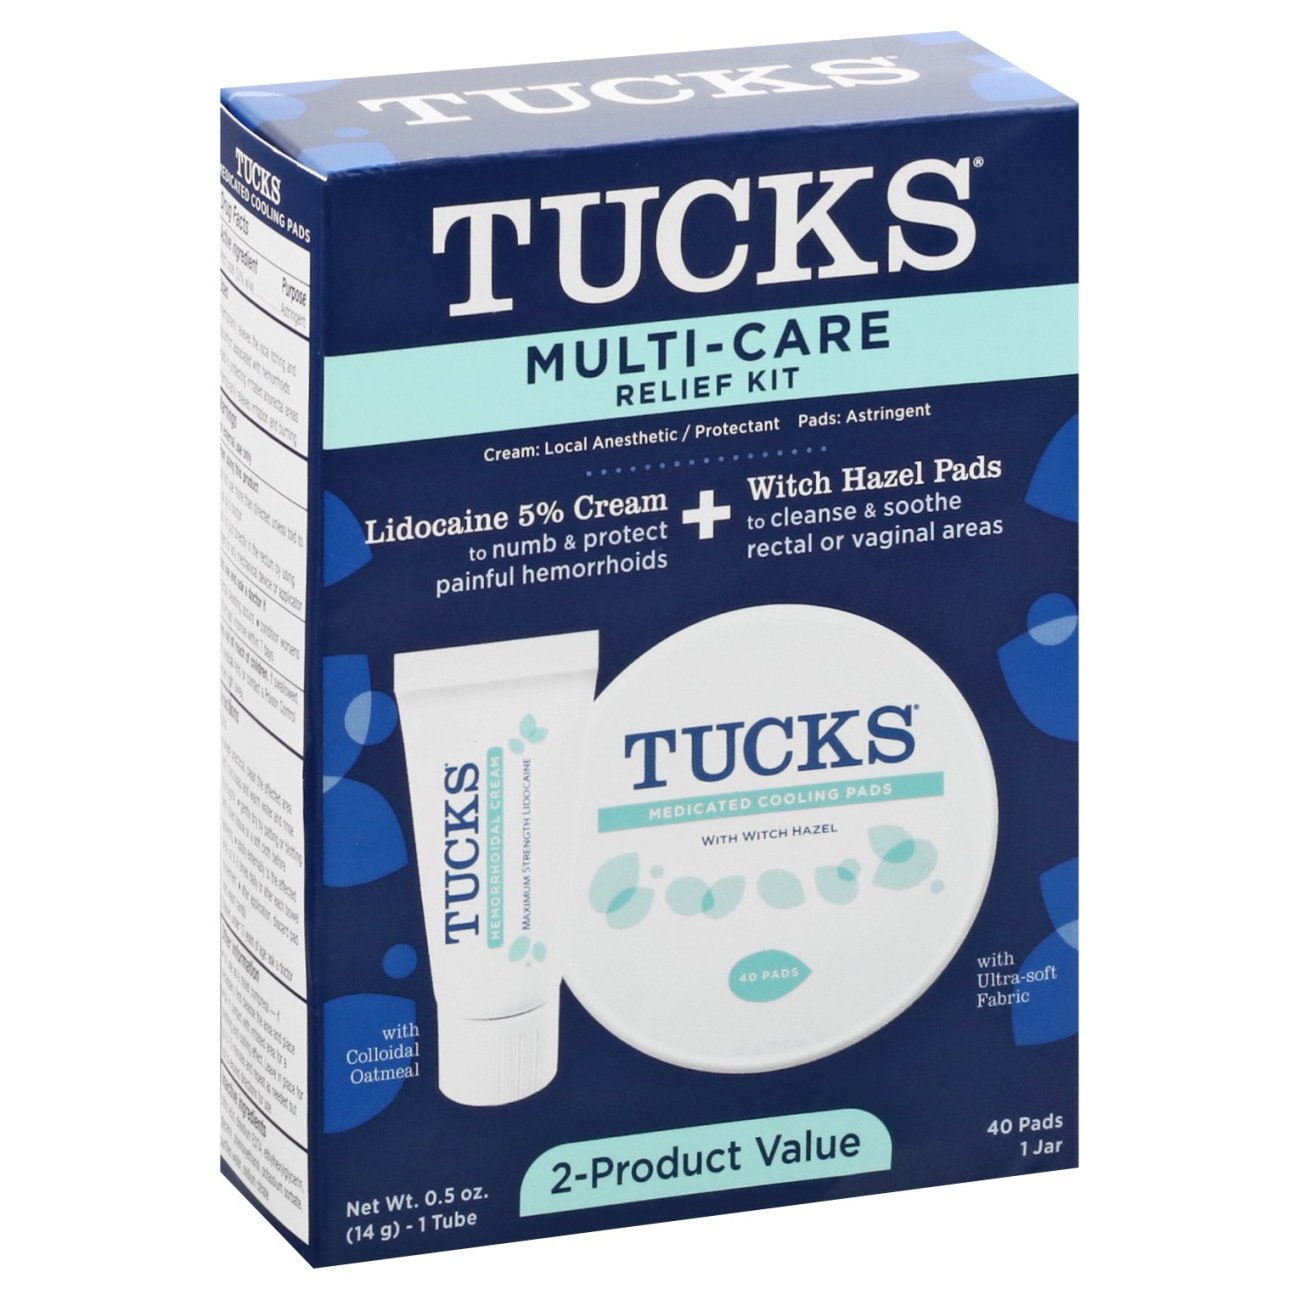 Tucks Multi